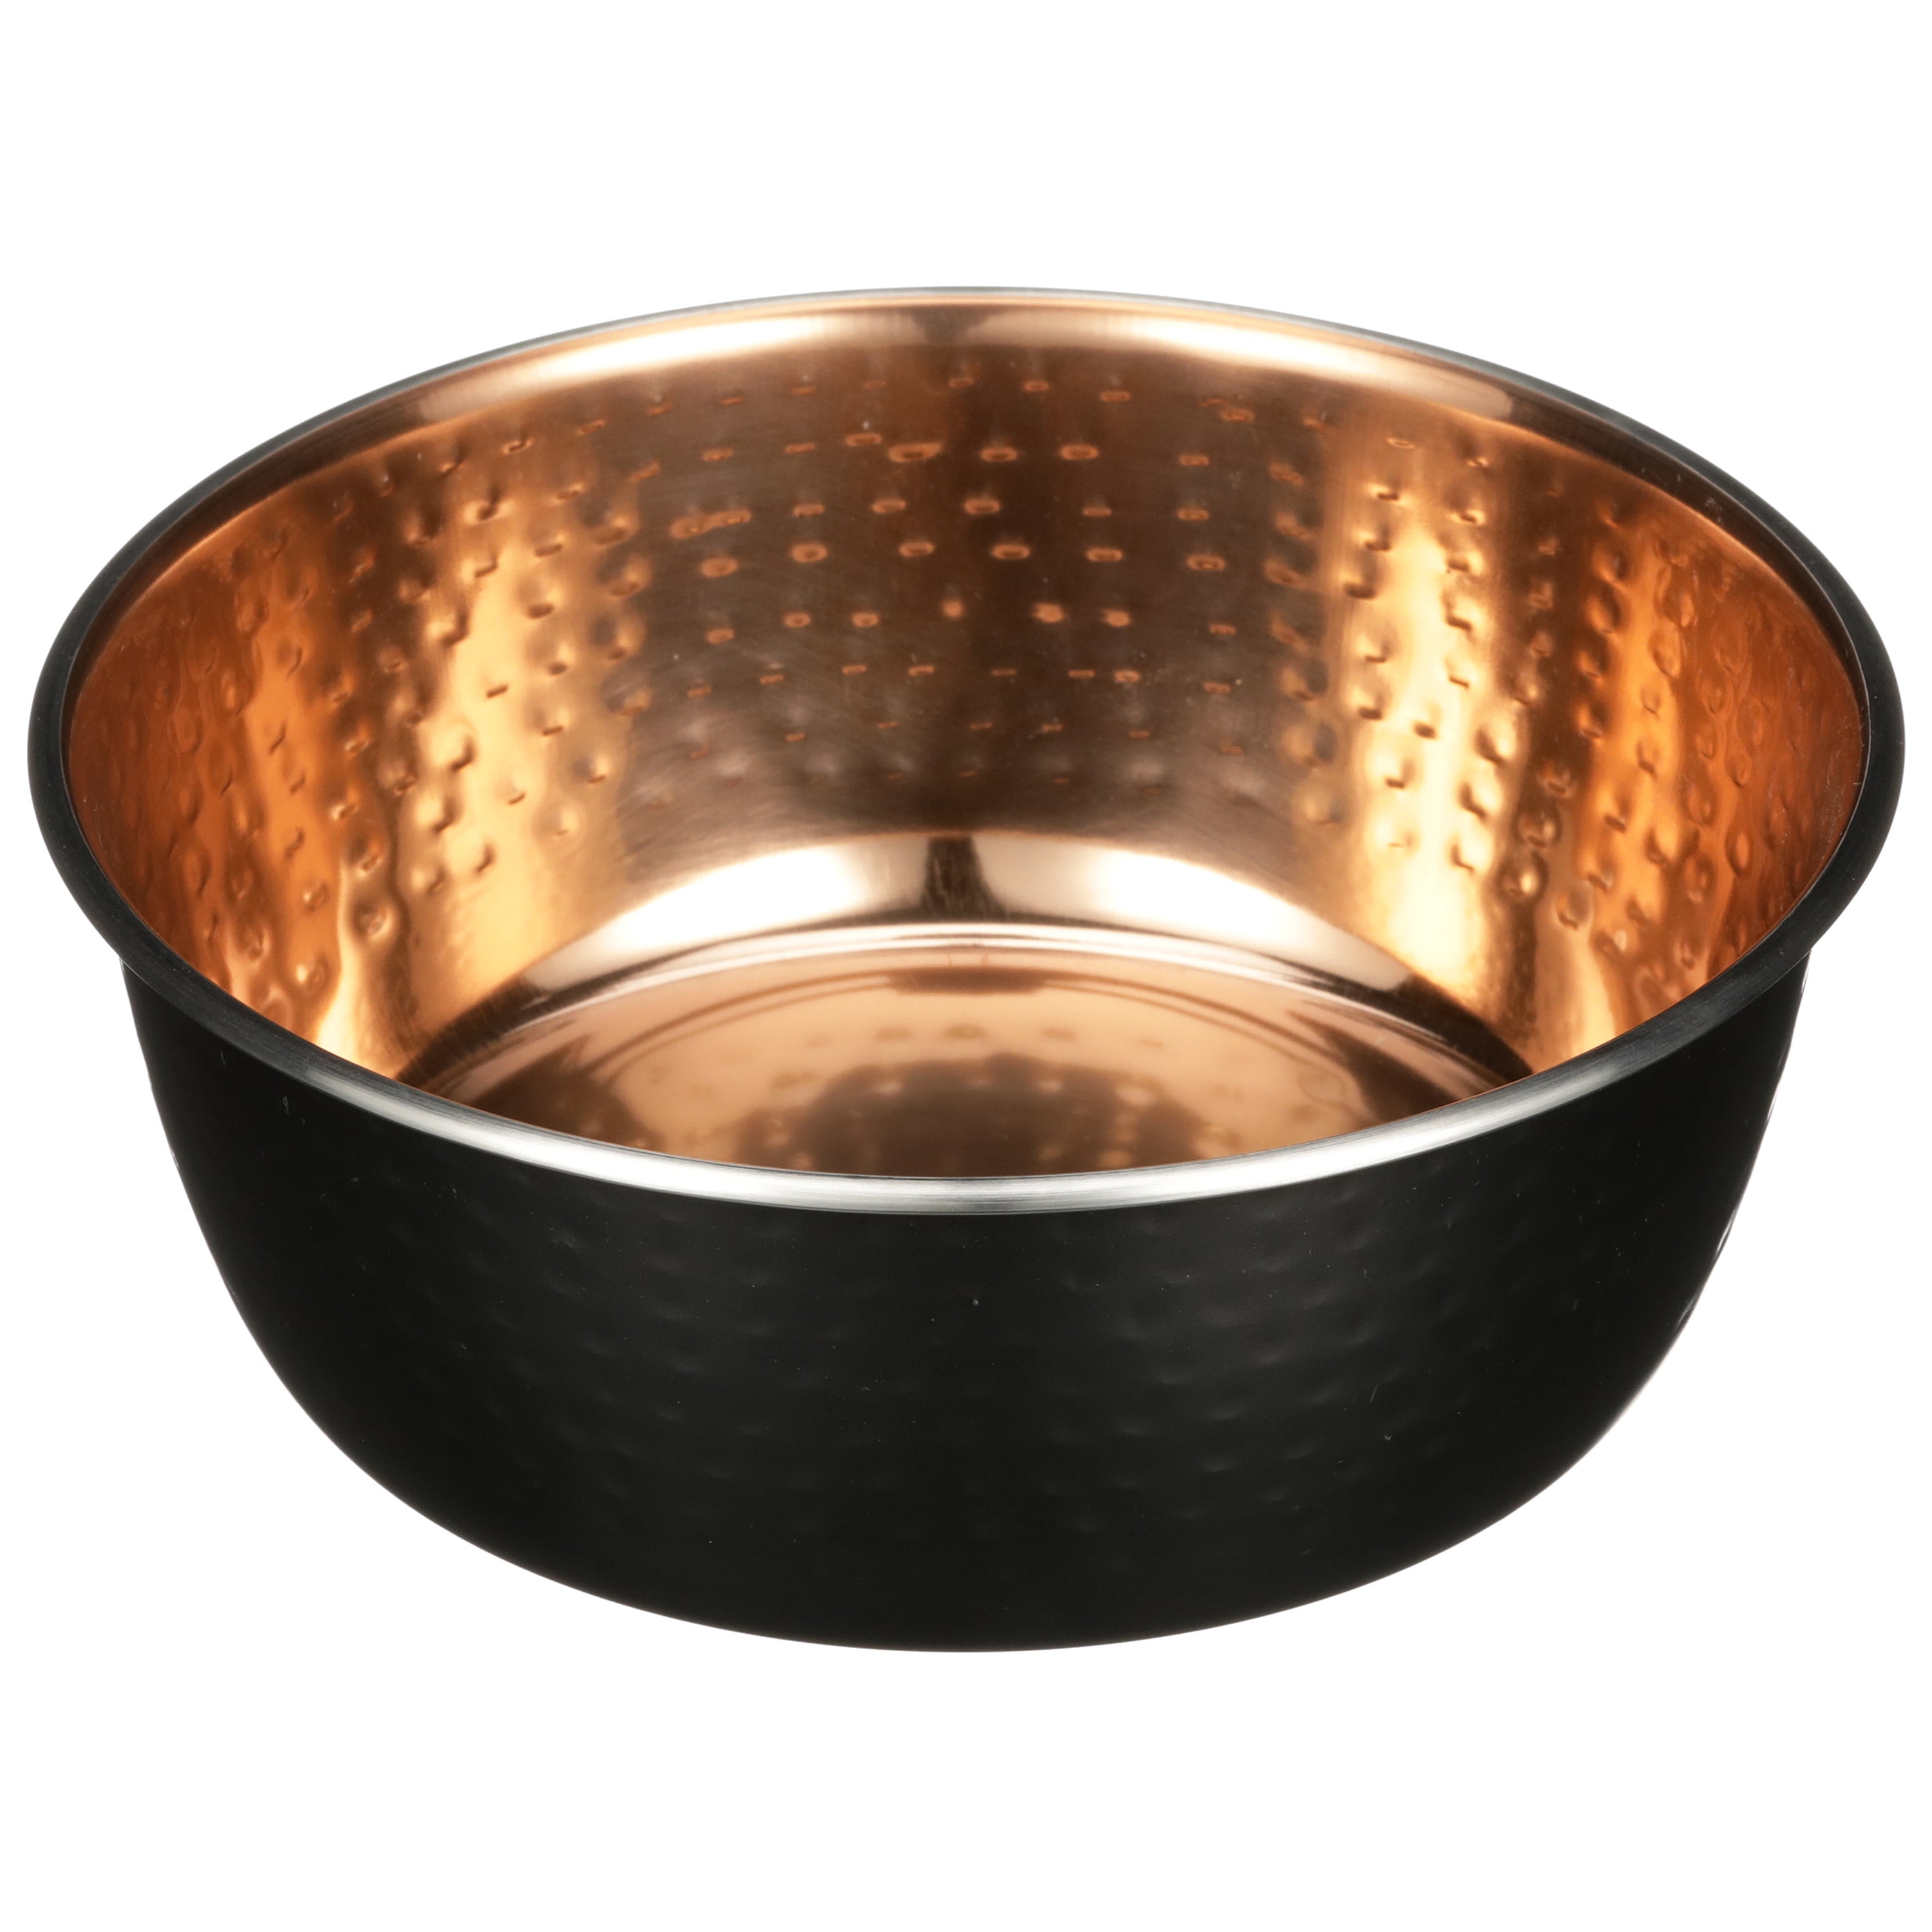 Hammered Copper-Finish Bowl Set